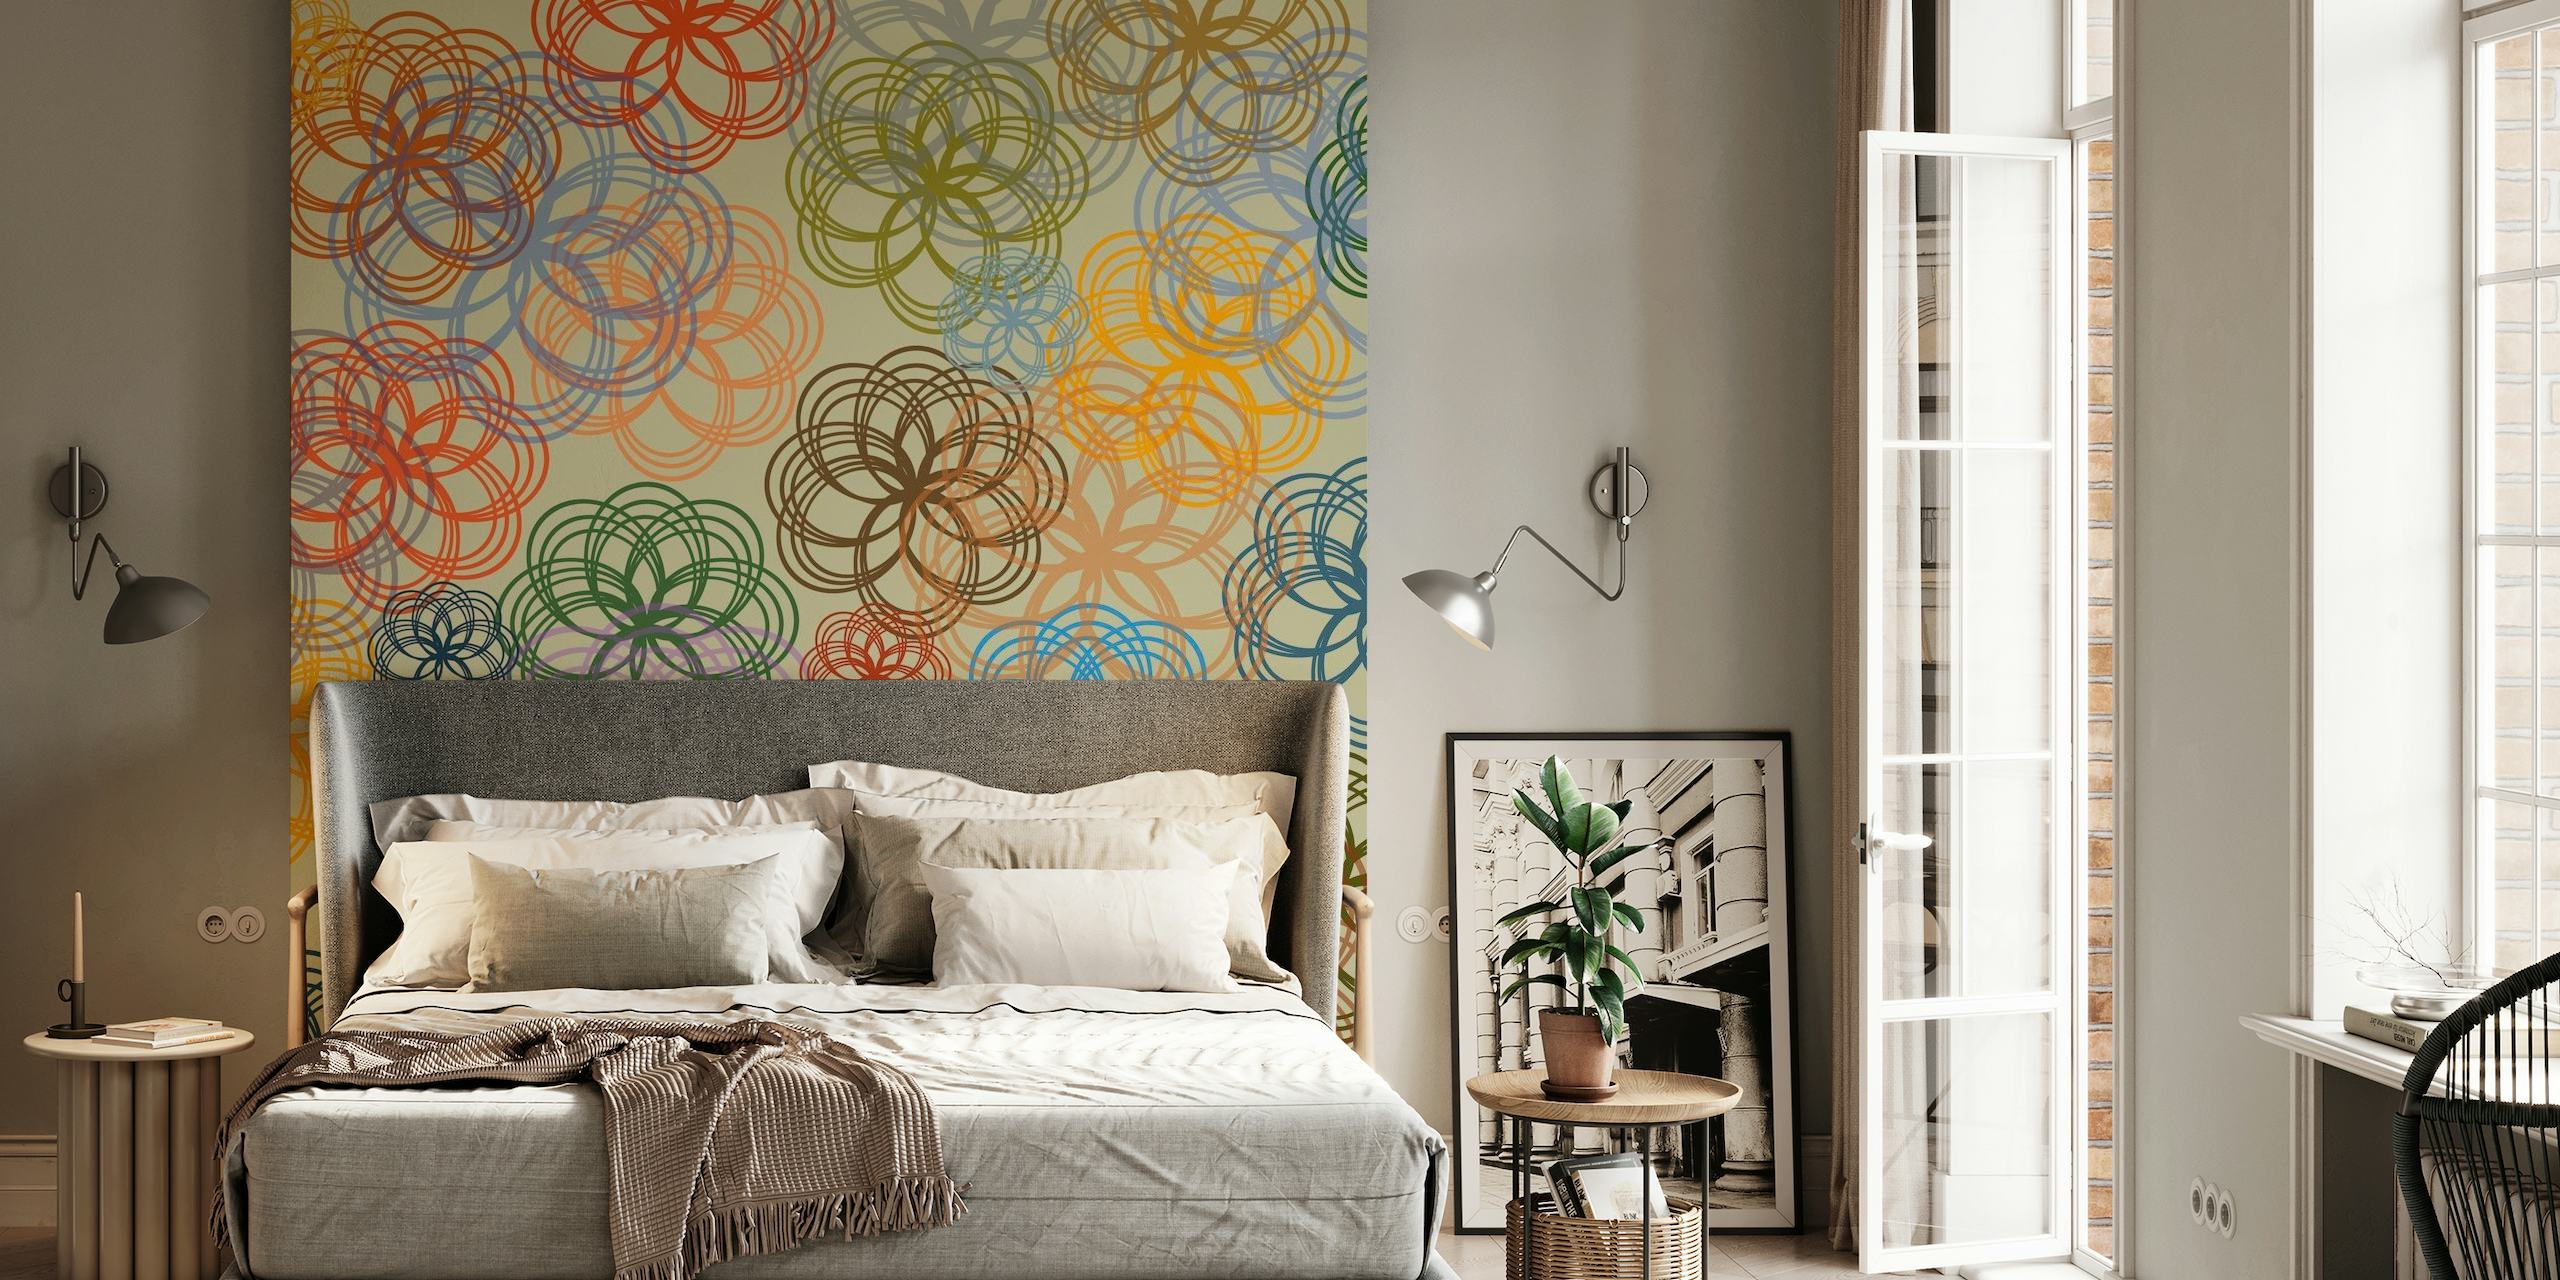 Fotomural vinílico de parede com padrões florais geométricos abstratos em um esquema de cores pastel